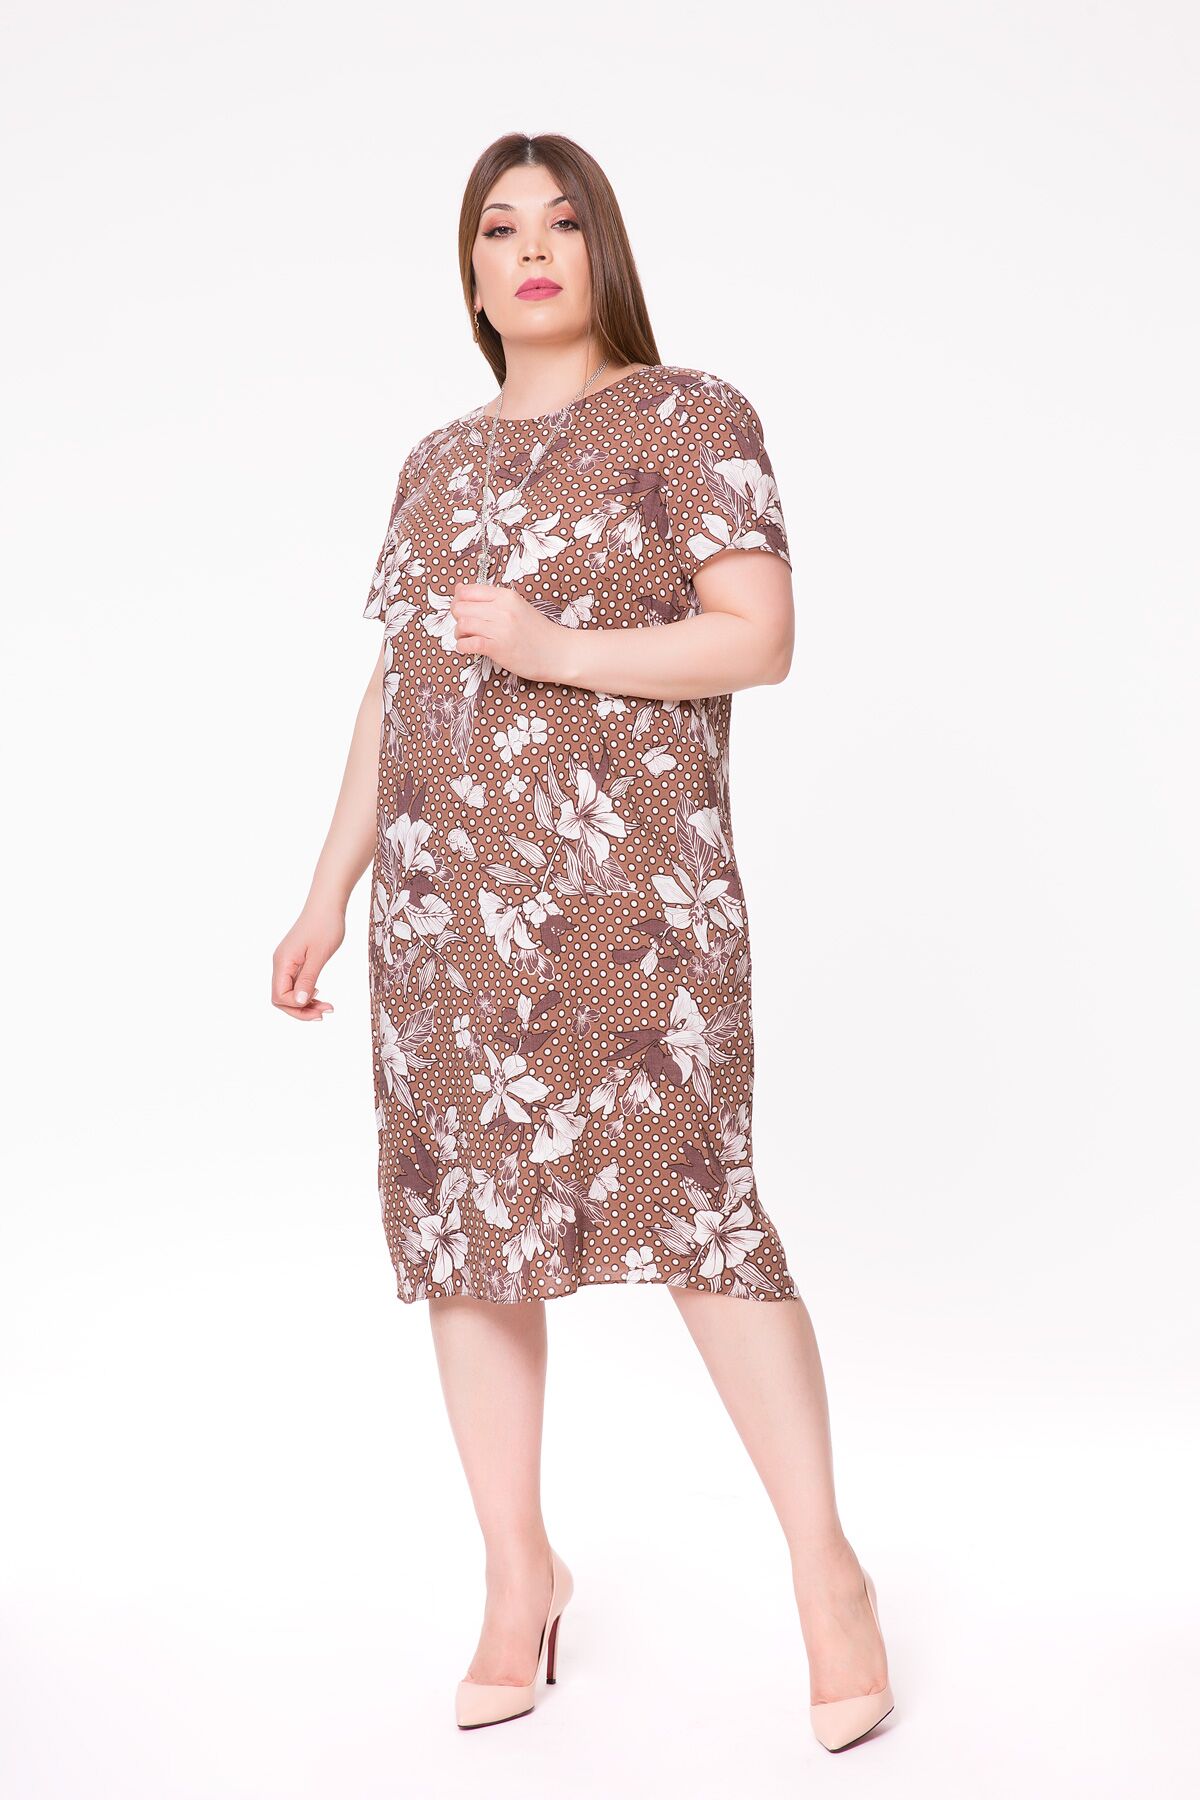 KIWE - Patterned Necklace Midi Length Brown Dress